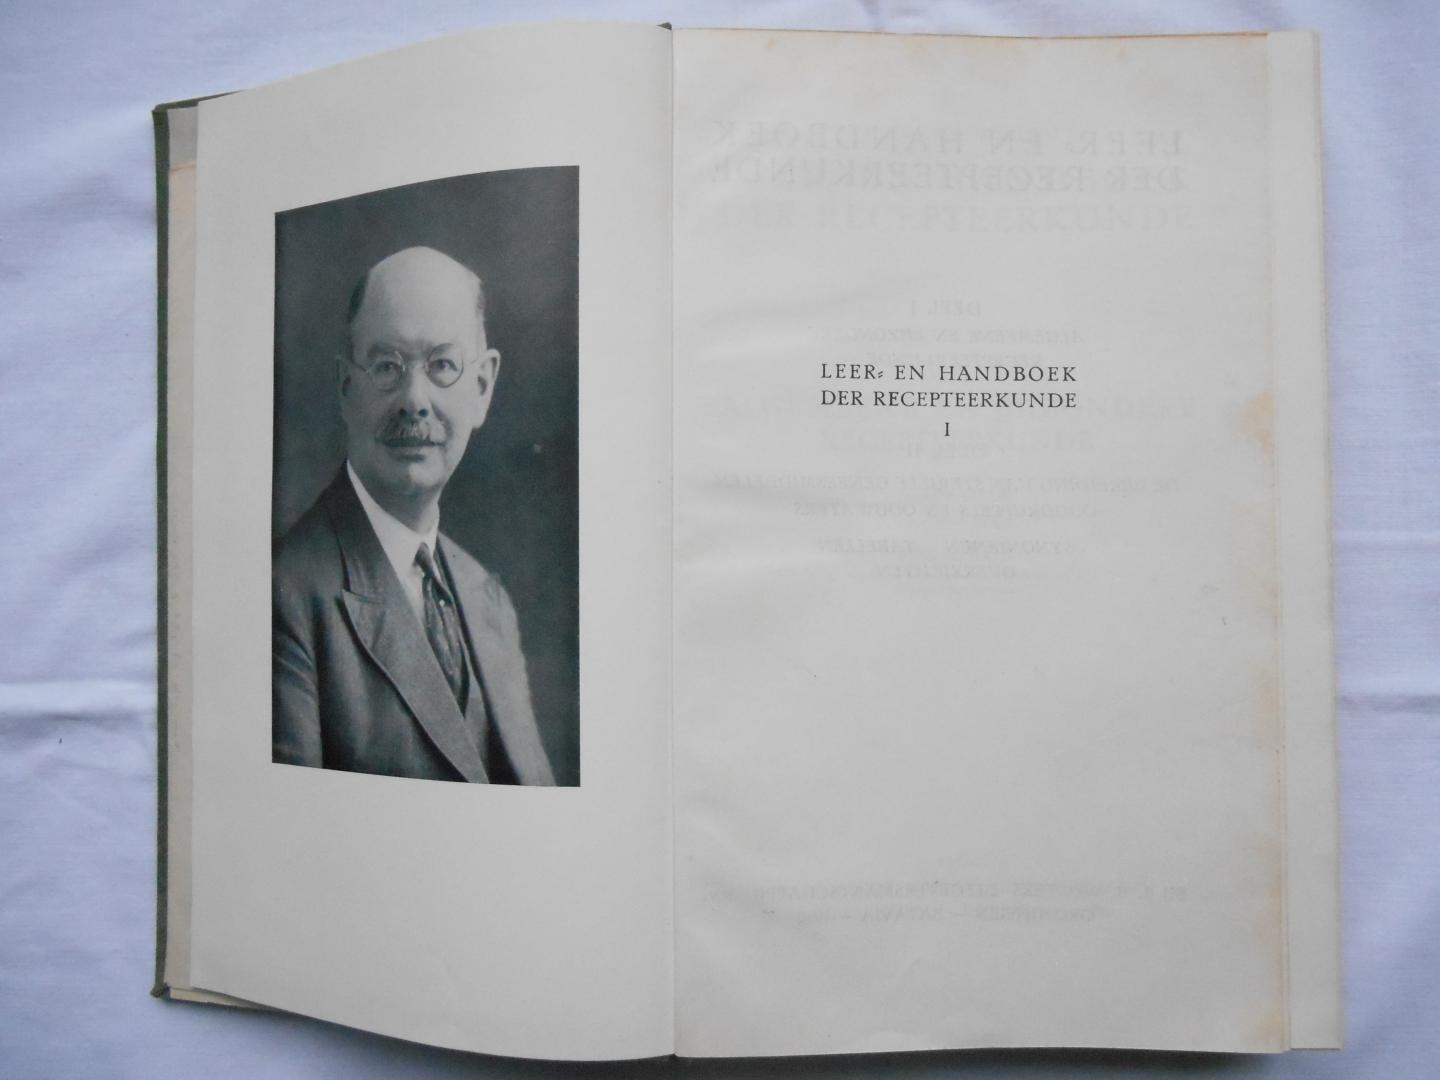 Wielen, P. van der & dr. J. Kok - Leer en handboek der recepteerkunde deel 1, derde druk herzien door dr. J. Kok